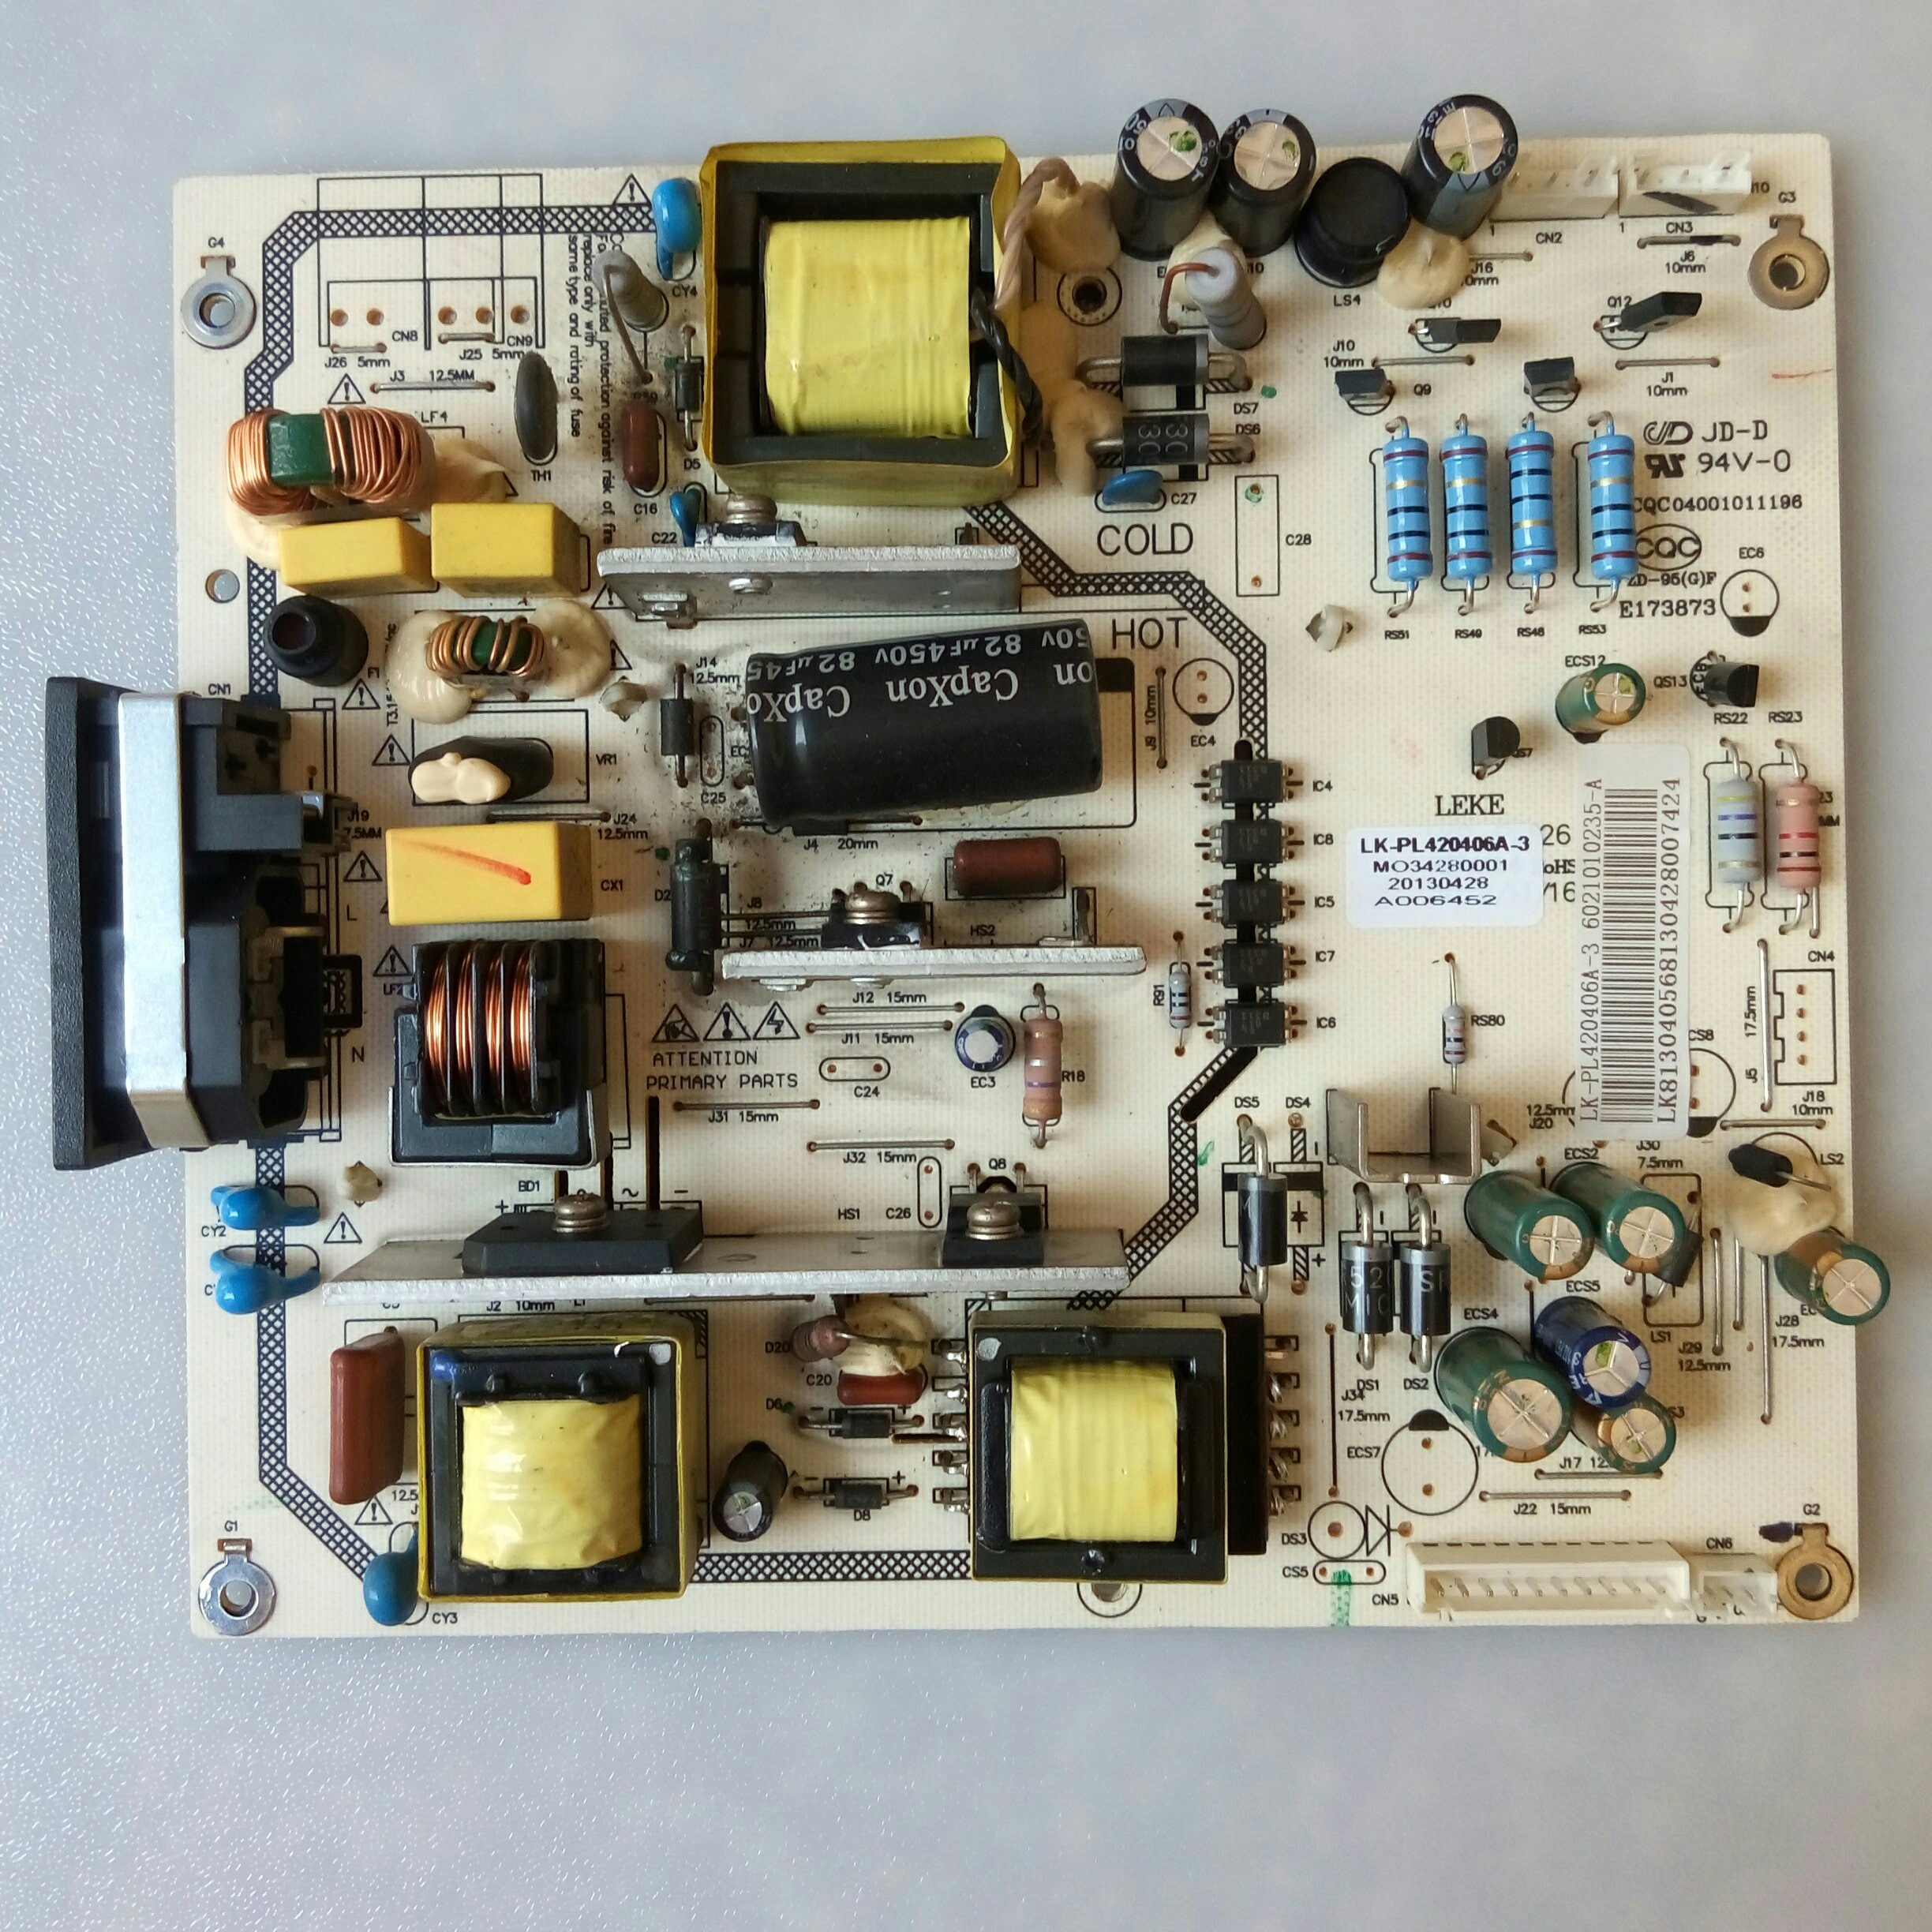 LK-PL420406A-3 LK-PL088 power supply board